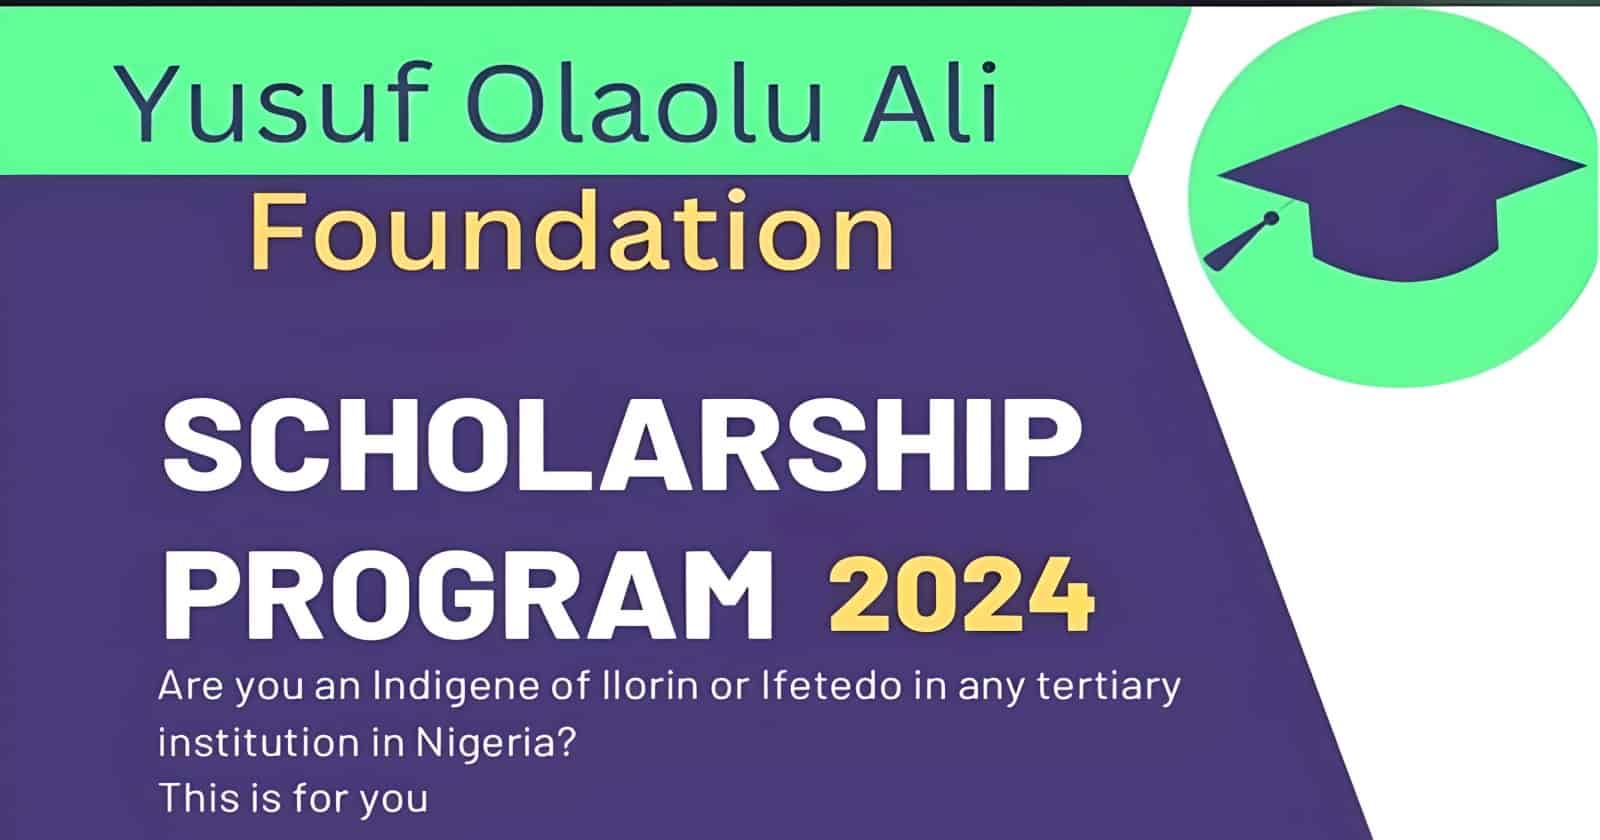 Yusuf Olaolu Ali Foundation Scholarship Program